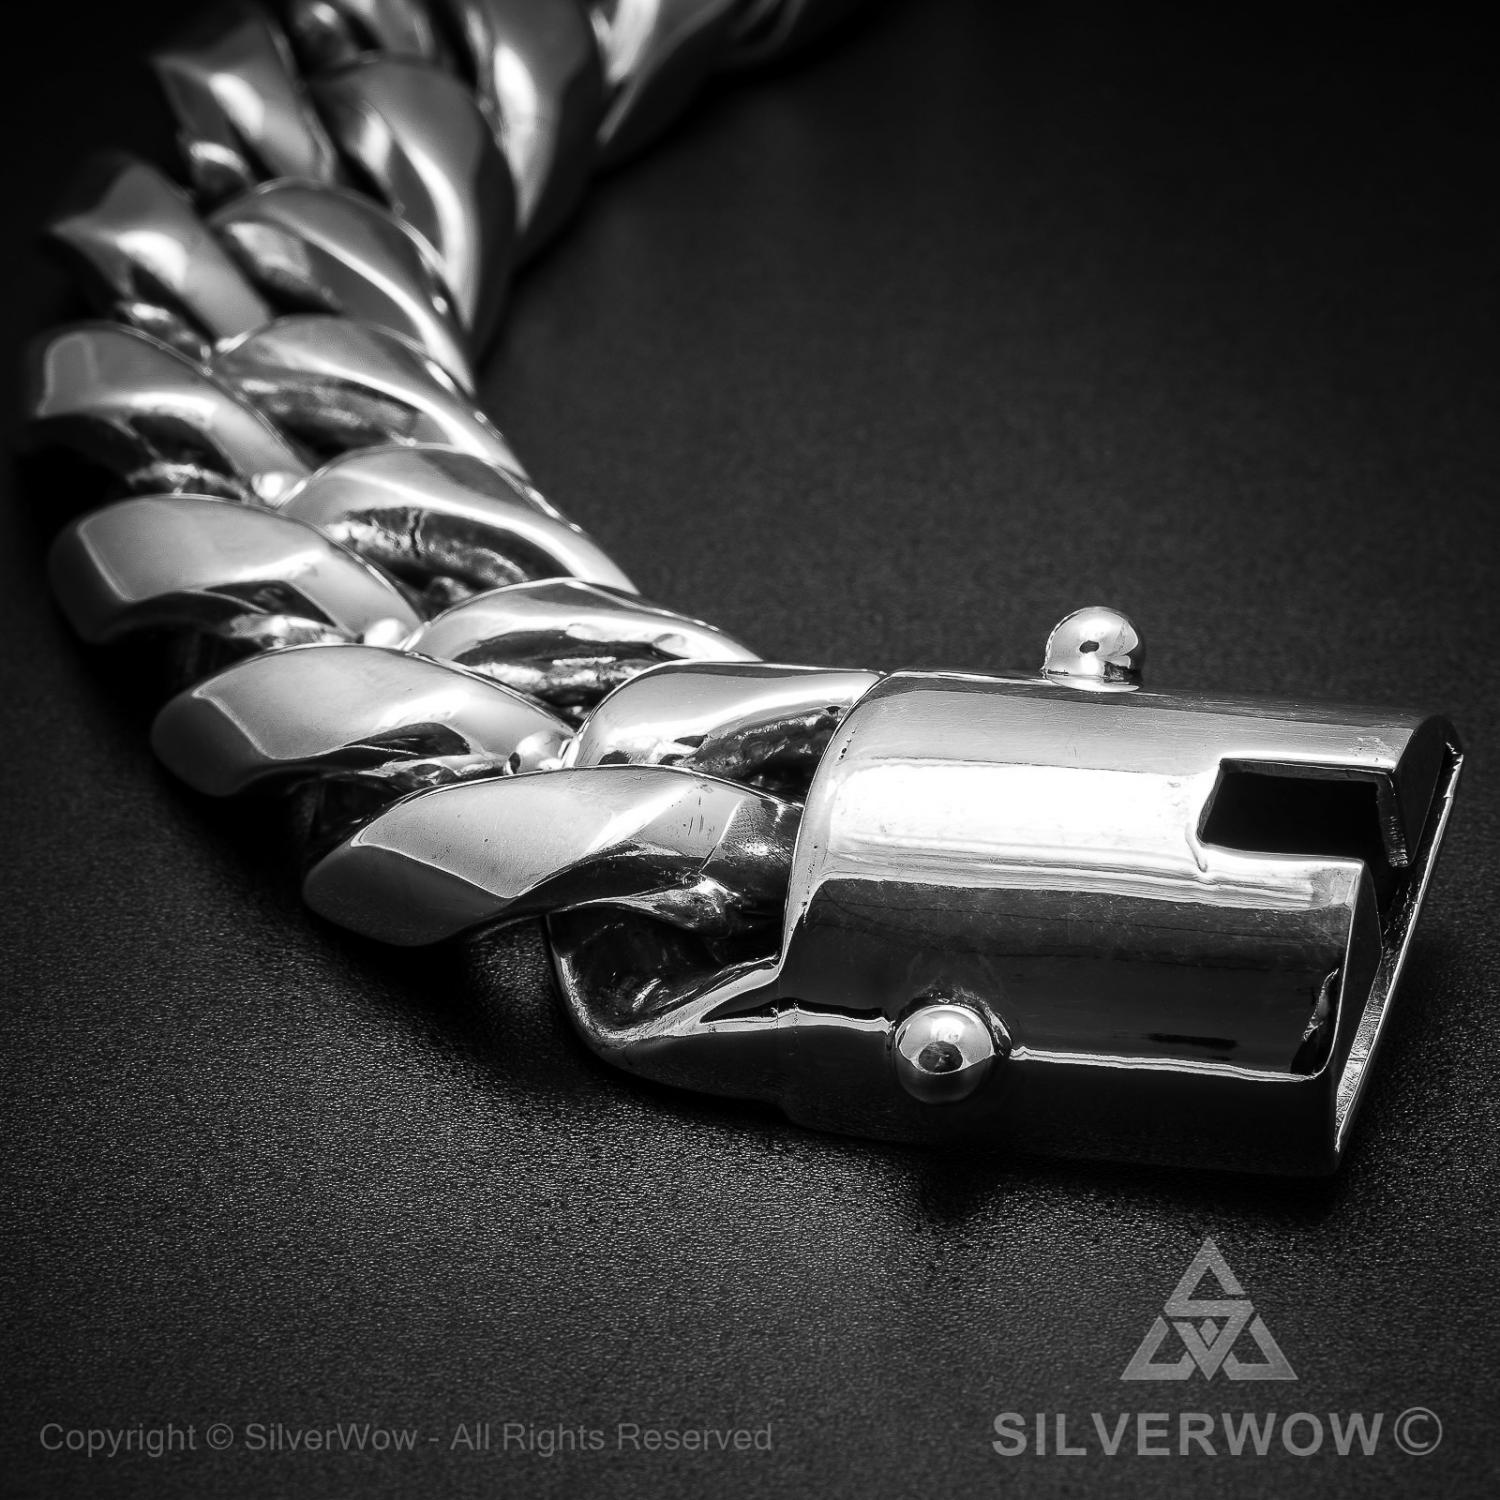 Cuban Link Bracelet x 30mm Wide clasp